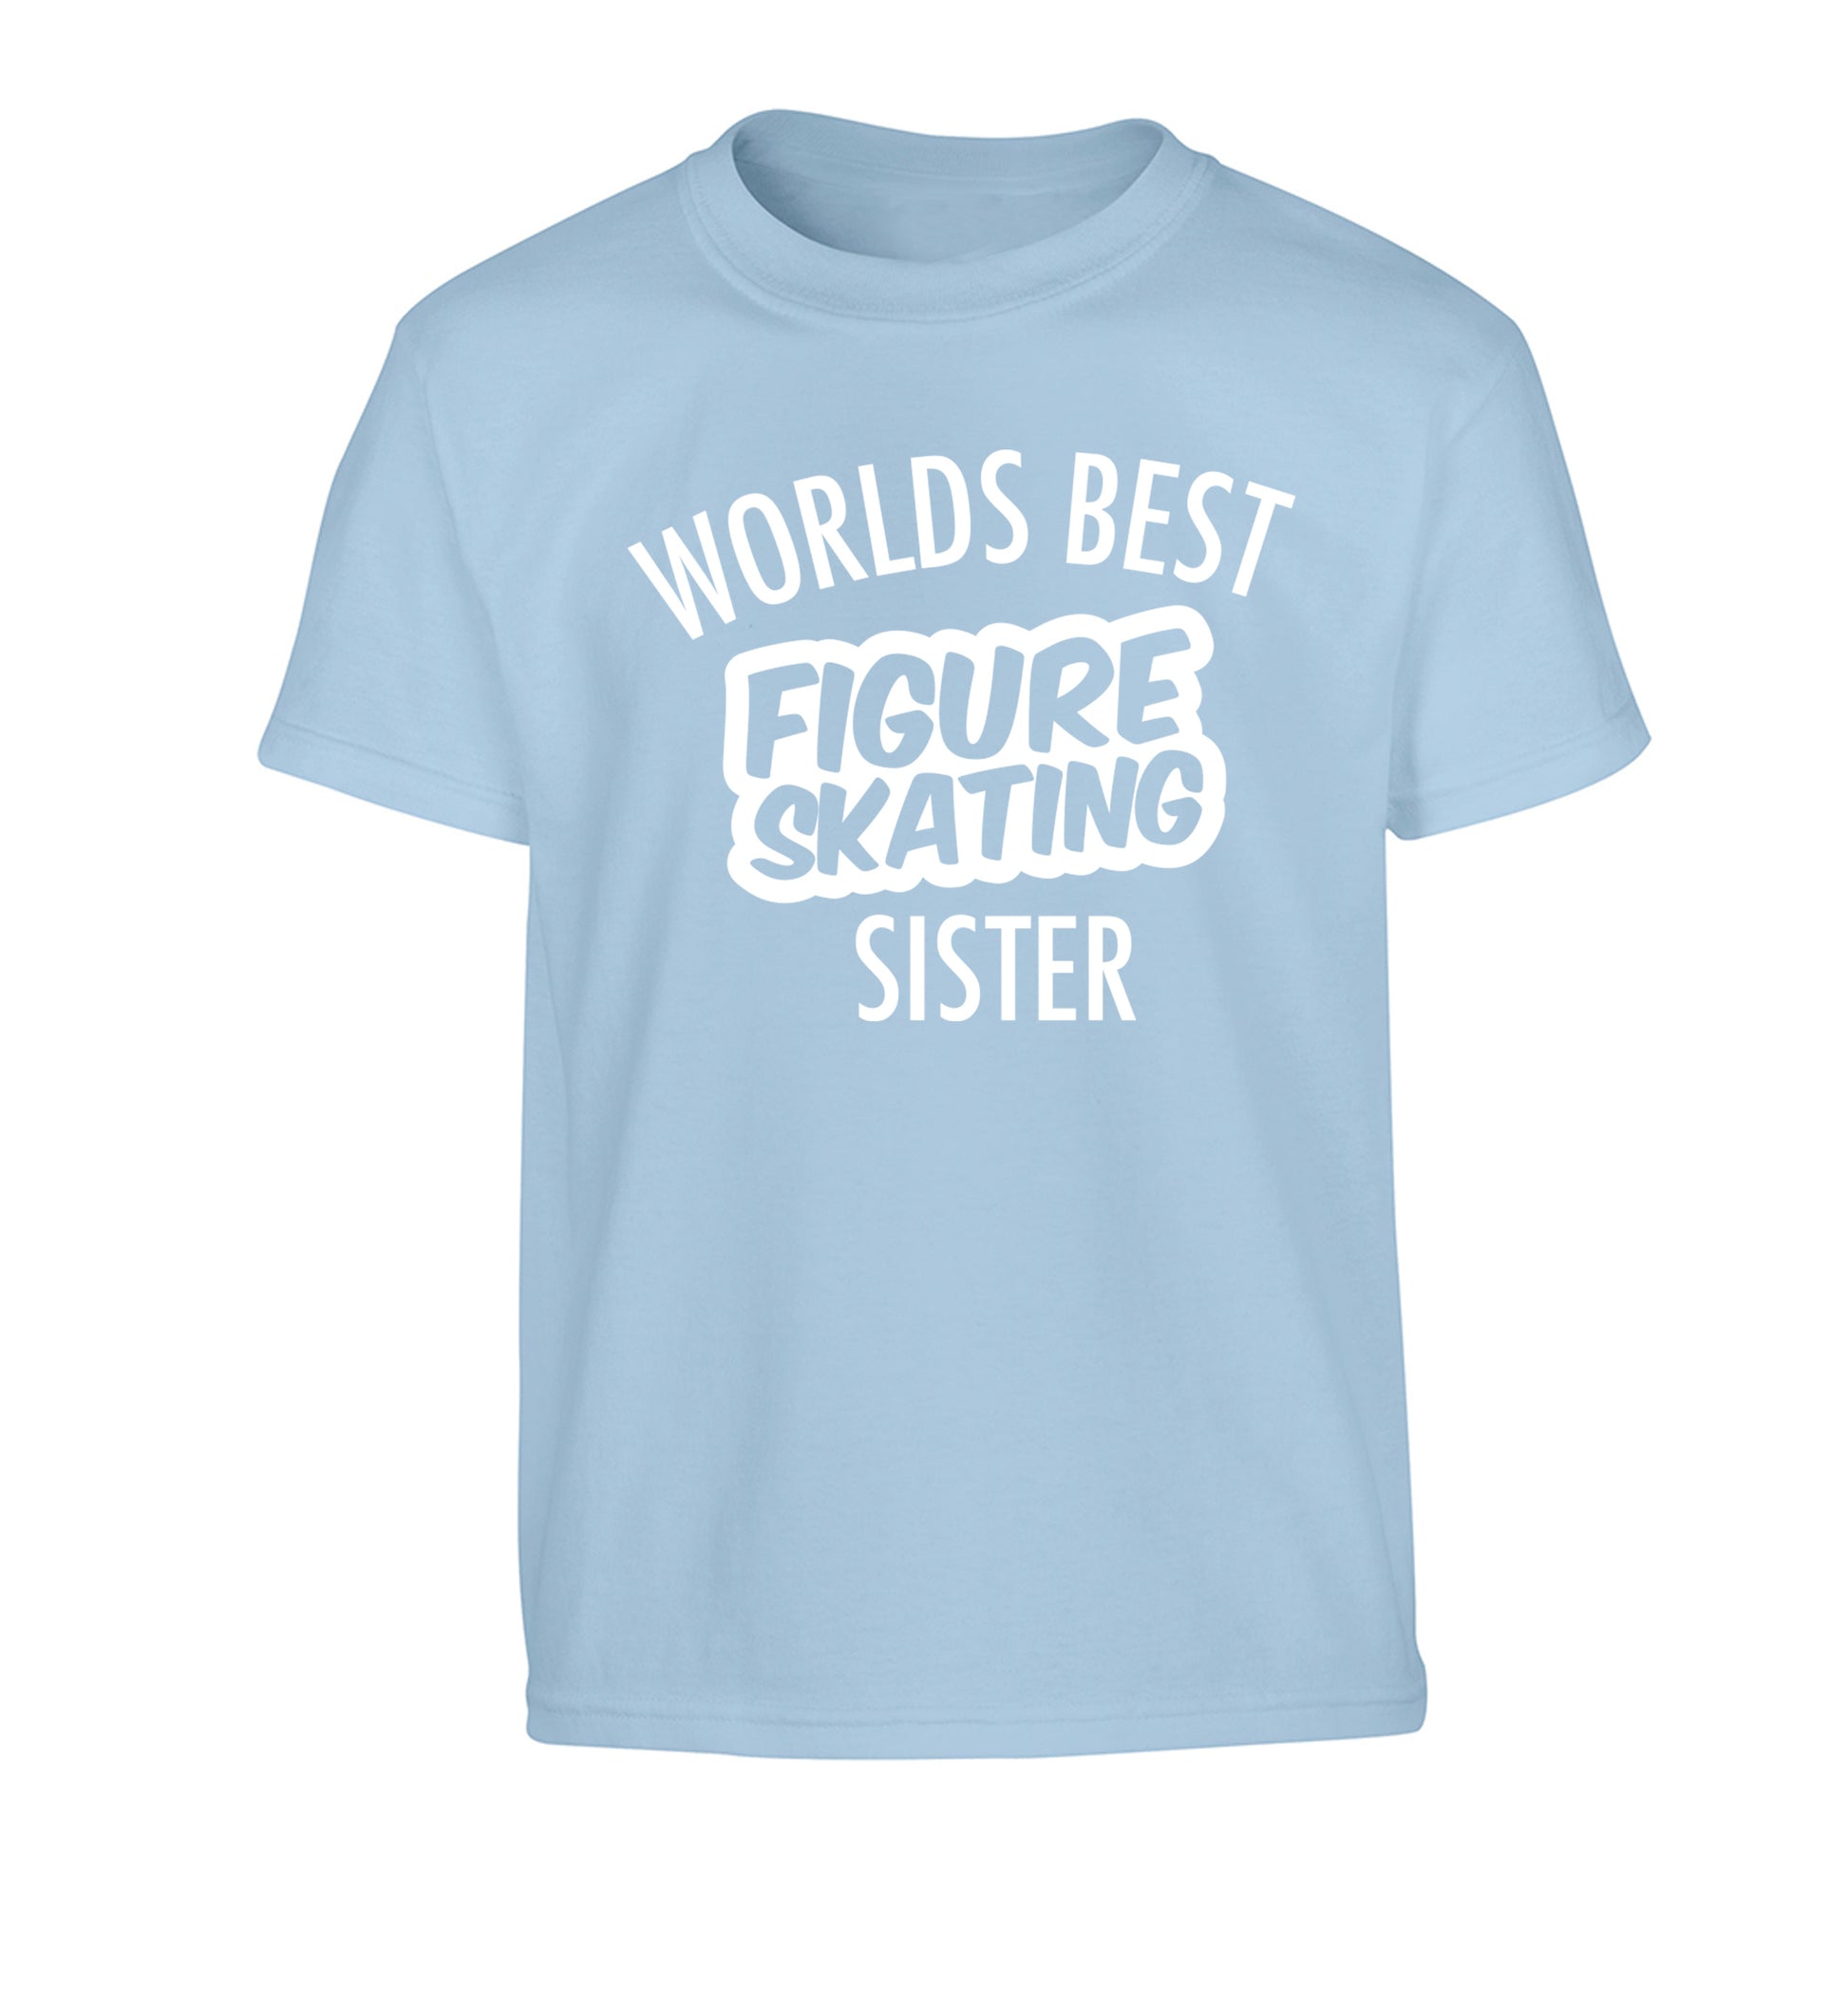 Worlds best figure skating sisterChildren's light blue Tshirt 12-14 Years